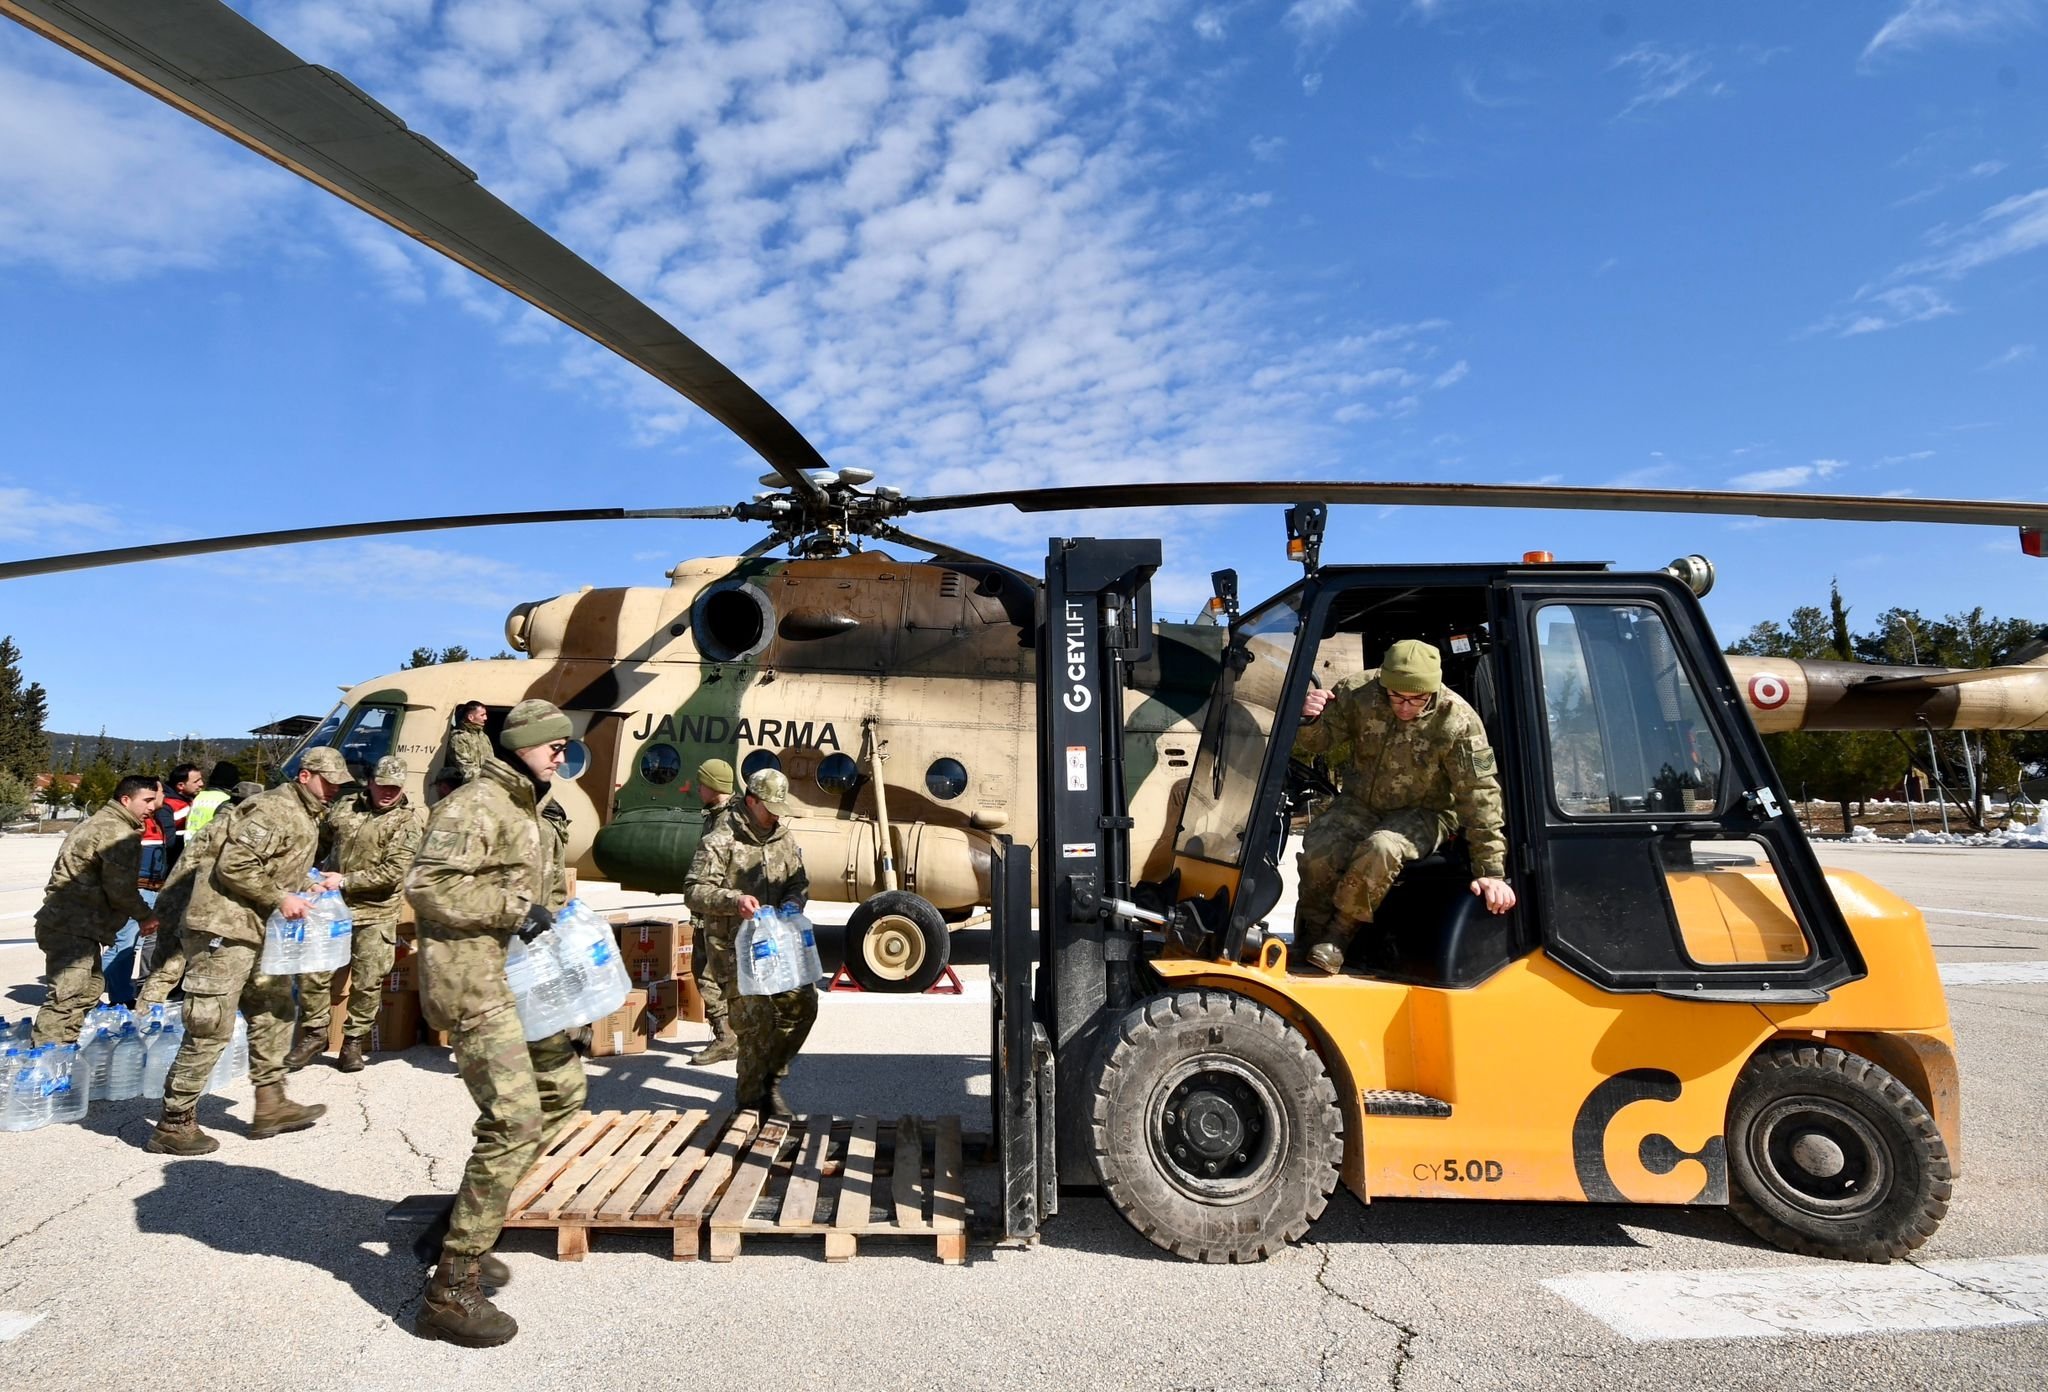 Gaziantep Provincial Gendarmerie Command bidrar til hjelpearbeidet, Gaziantep, Türkiye, 9. februar 2023. (Foto med tillatelse fra departementet for miljø, urbanisering og klimaendringer)